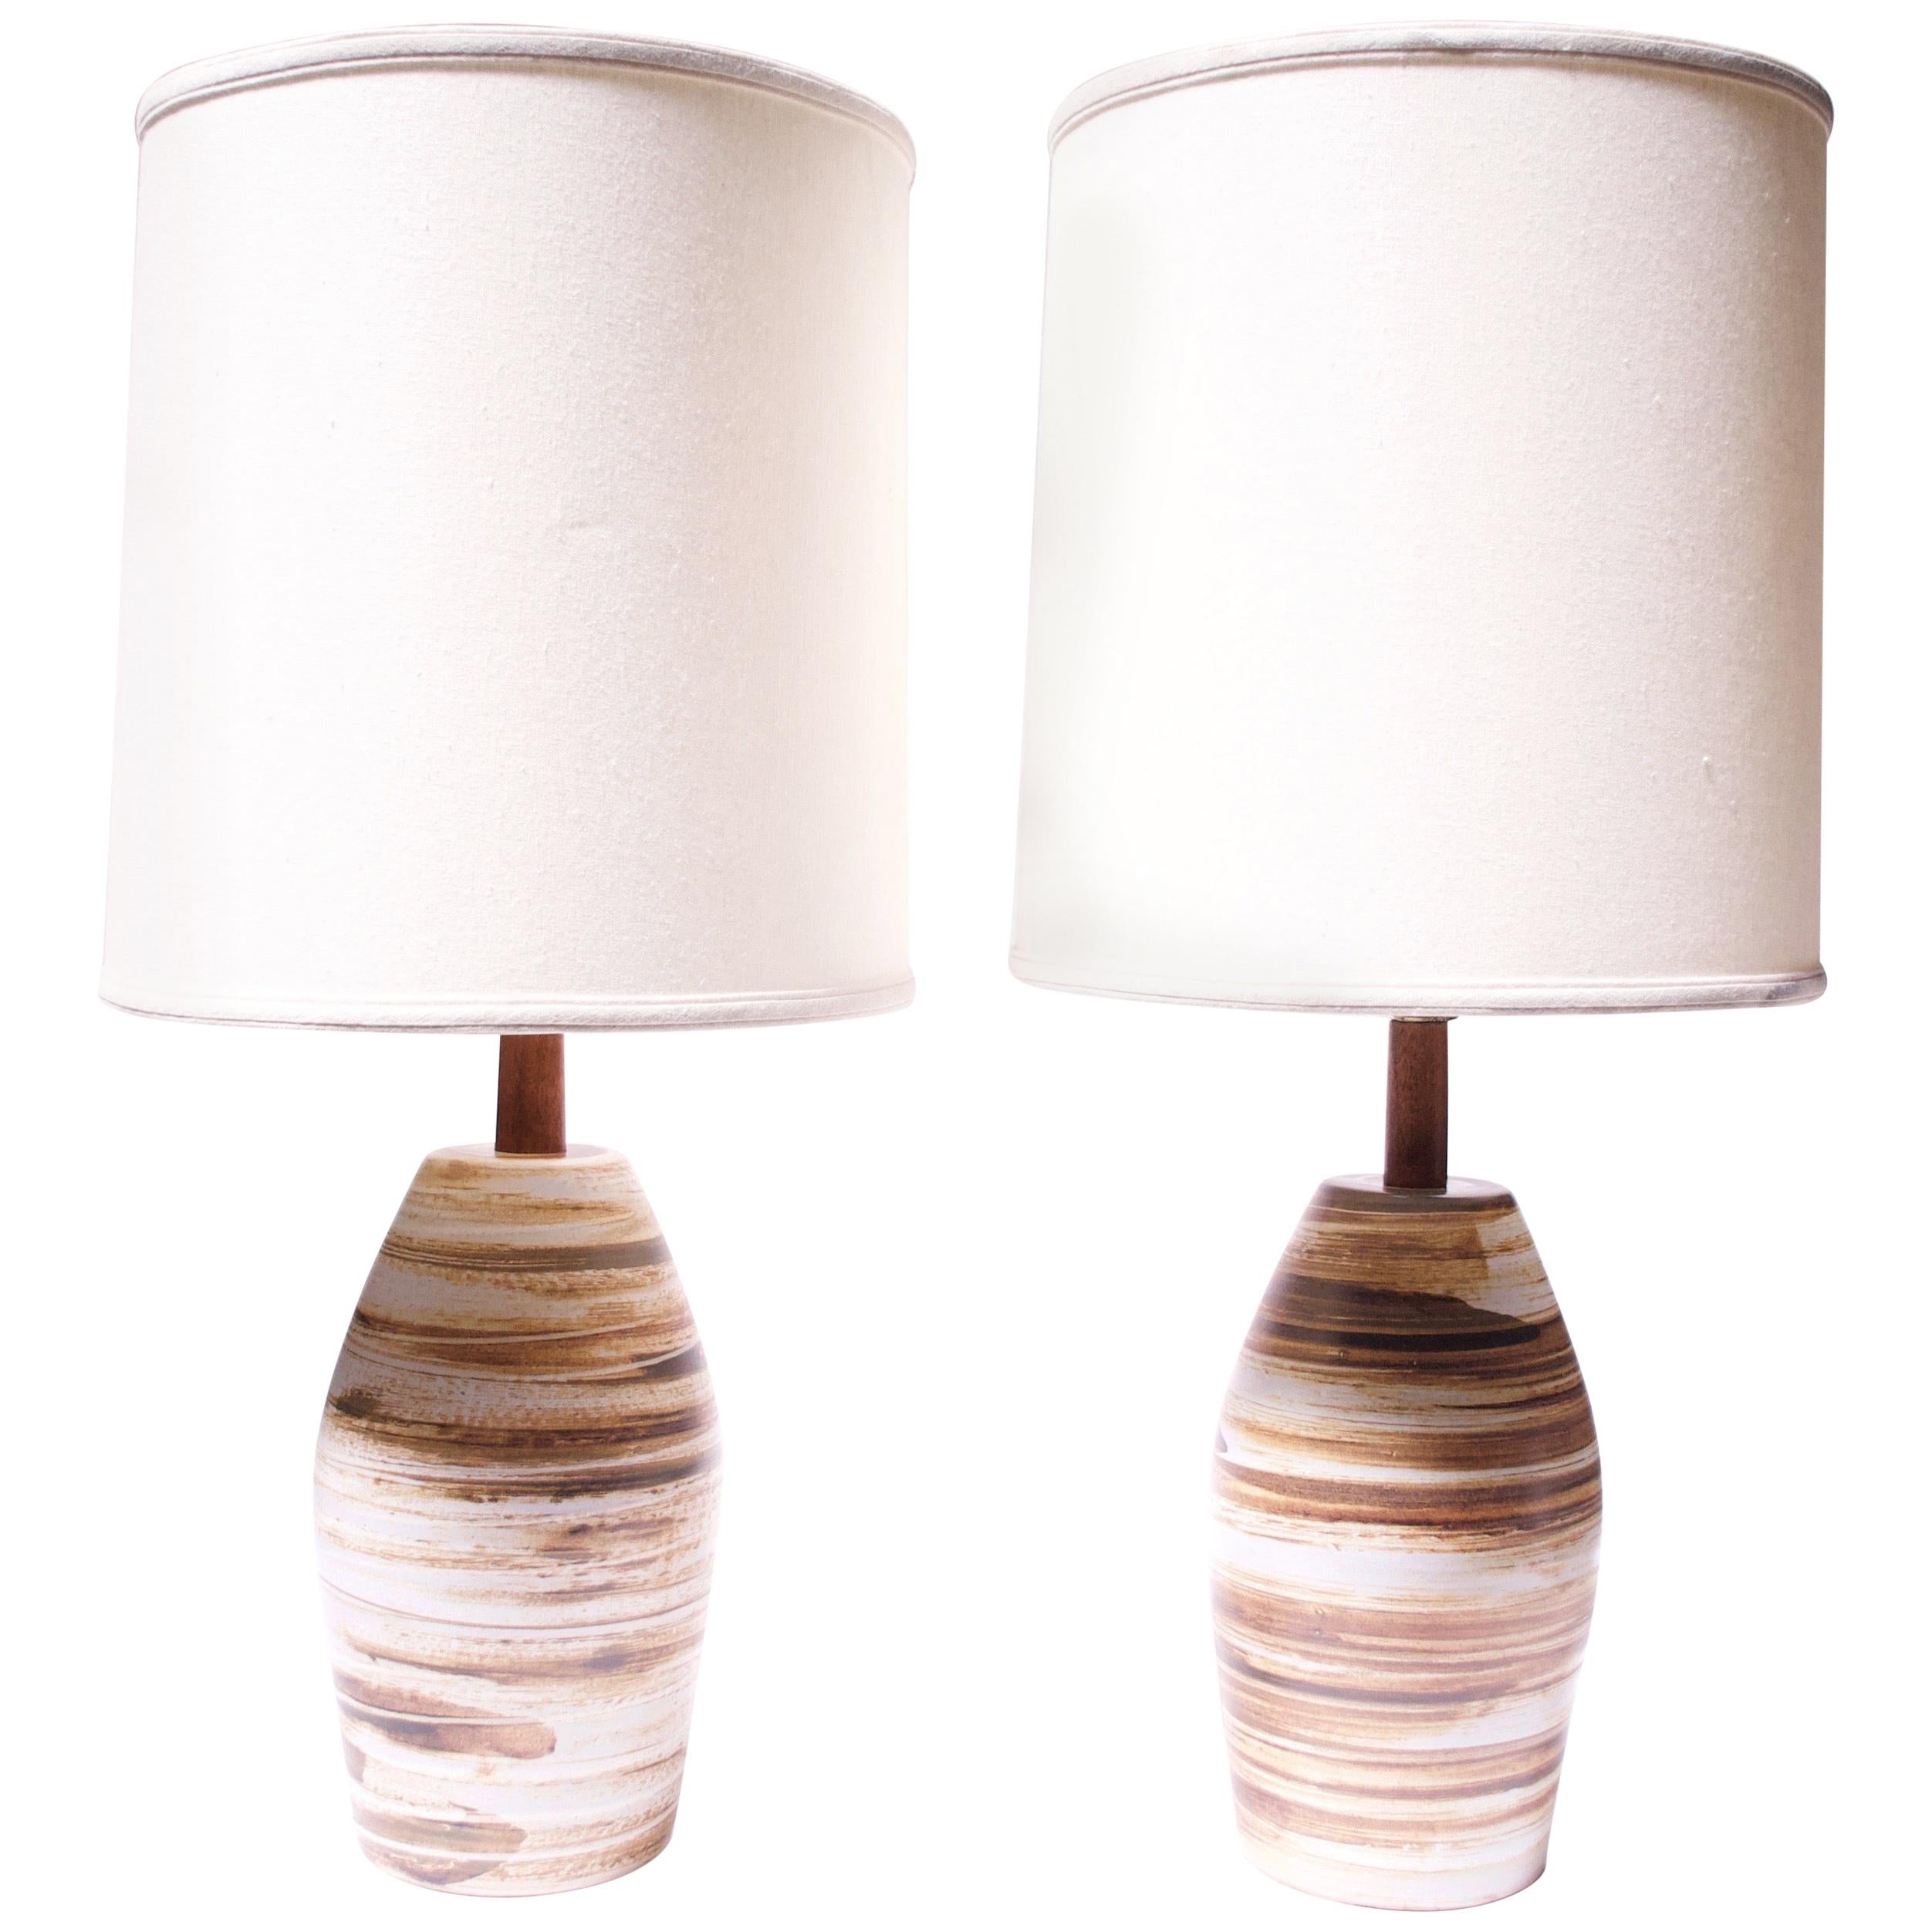 Diese Tischlampen von Gordon und Jane Martz für Marshall Studios (Modell #267-28-D116A) haben einen matten Sockel mit kontrastierenden Wirbeln aus Hellbraun, Braun, Creme und Dunkelgrün. Geätzte 'Martz'-Signatur auf beiden vorhanden.
Da es sich um